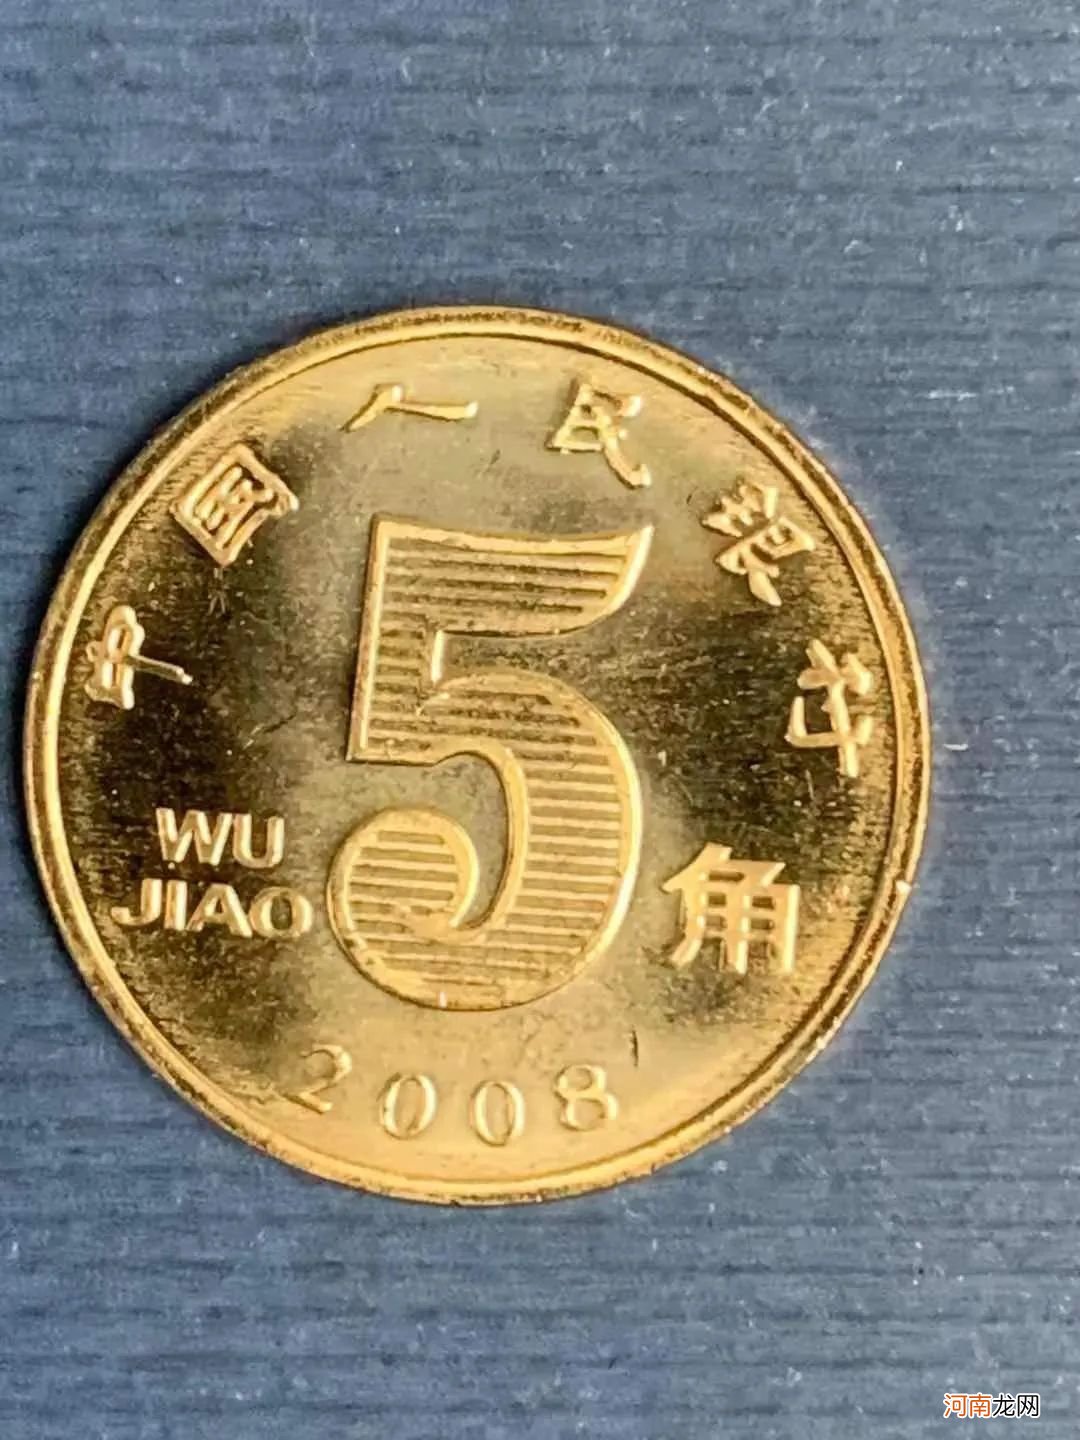 实拍五角硬币的四世同堂 5毛钱硬币直径多少mm